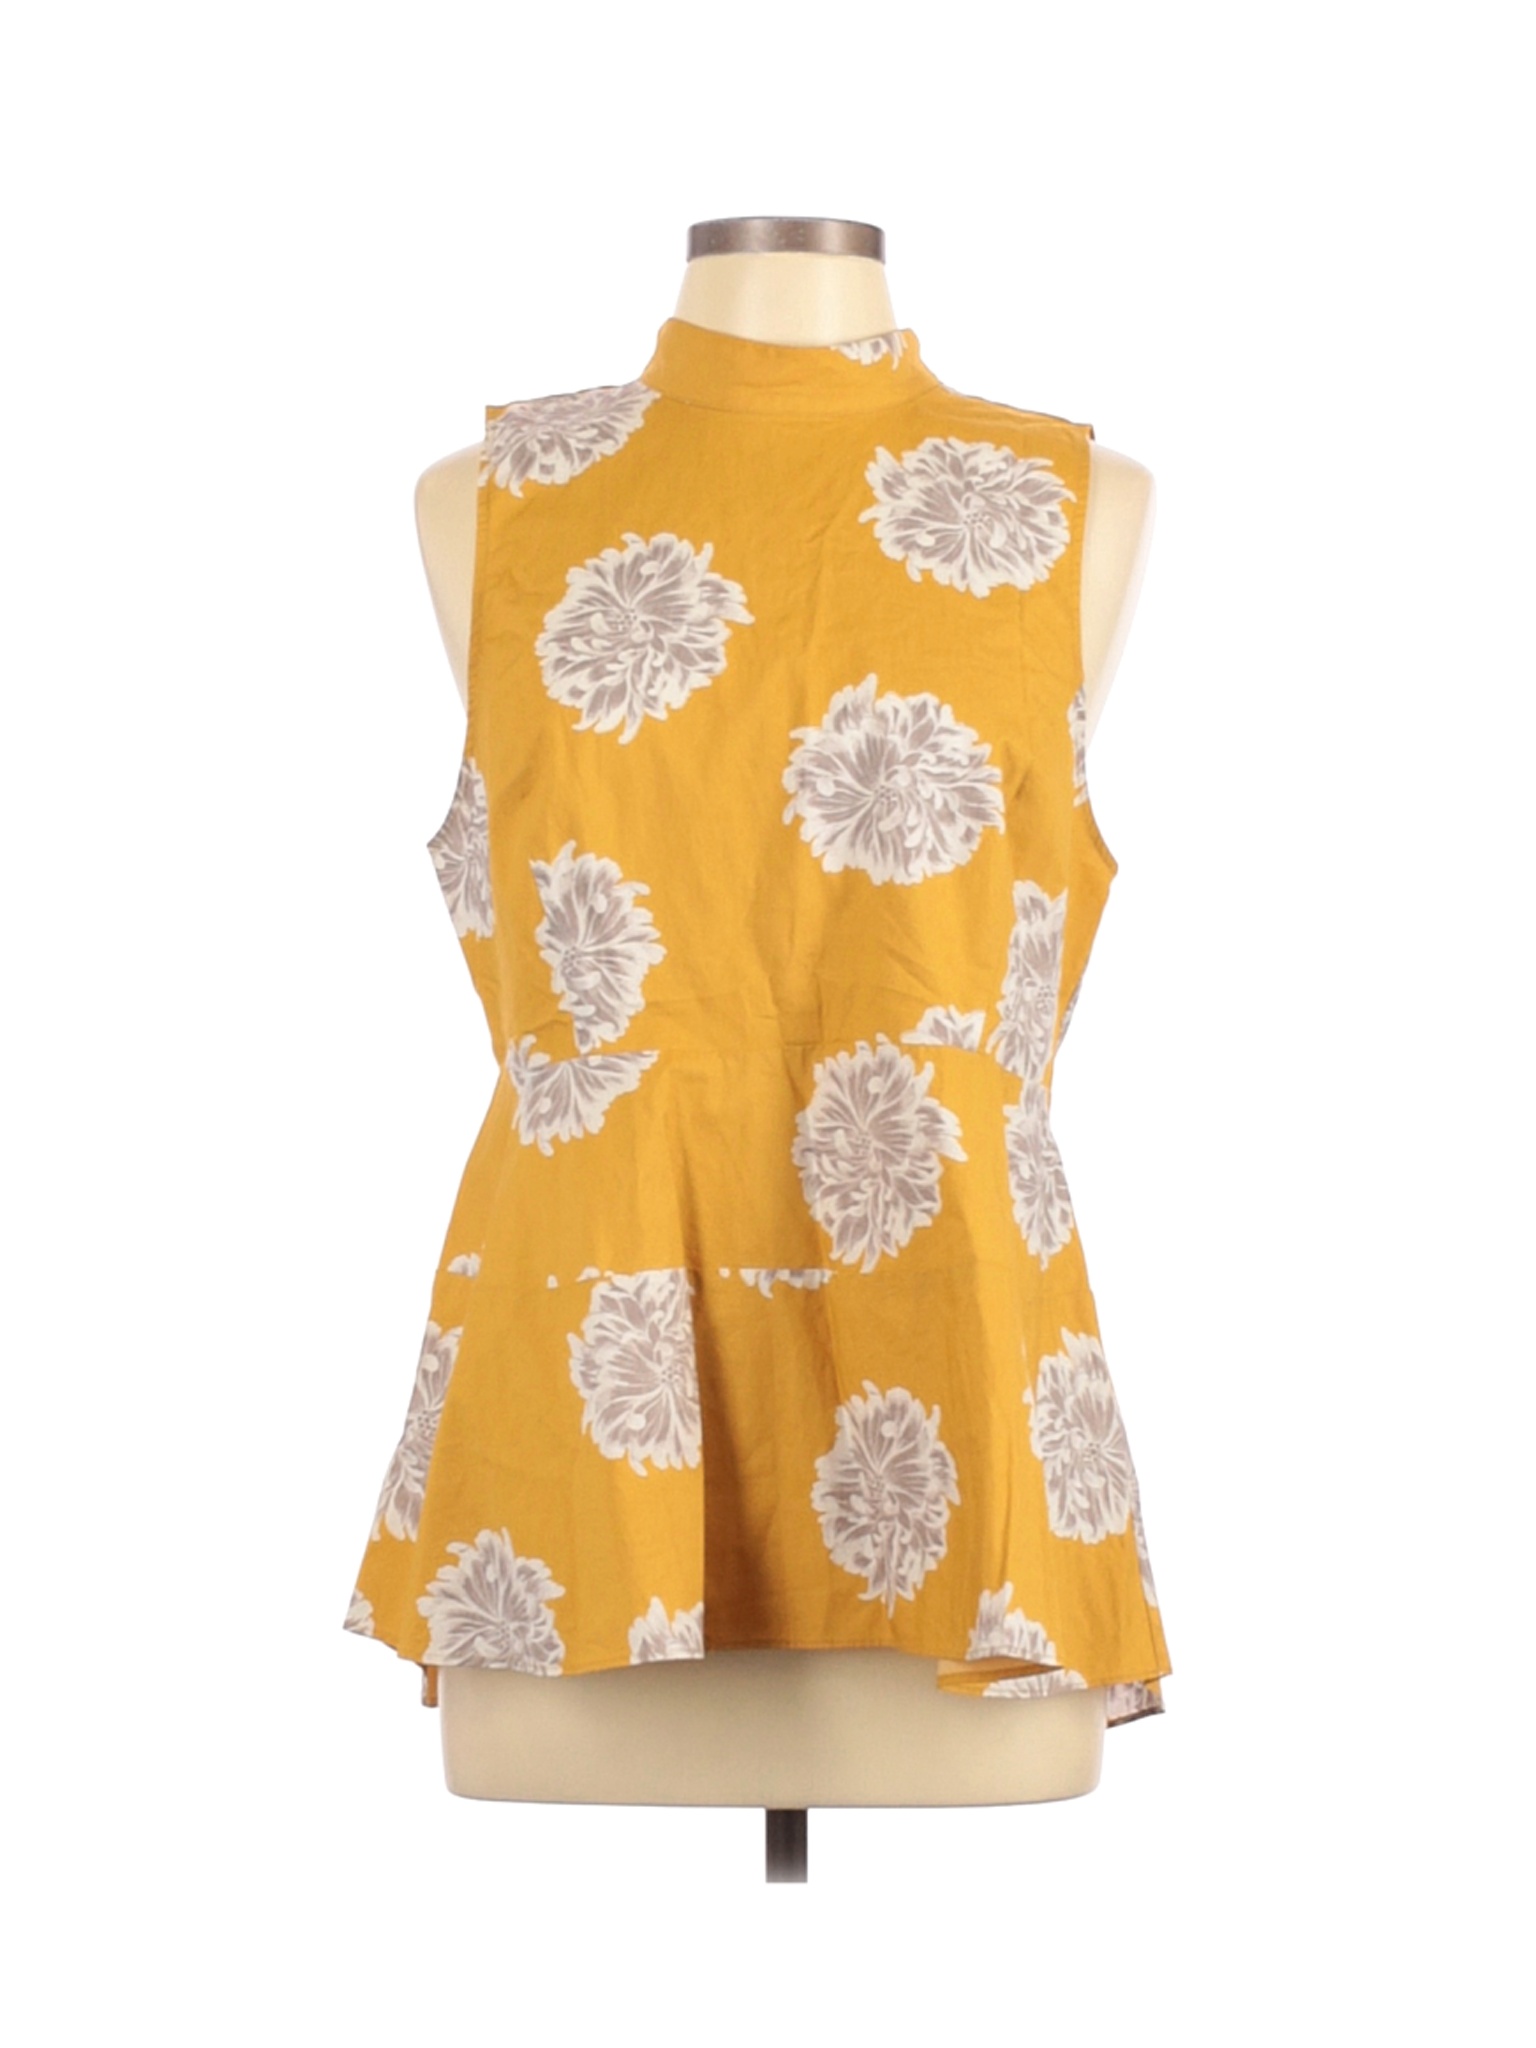 Valette Women Yellow Sleeveless Blouse L | eBay